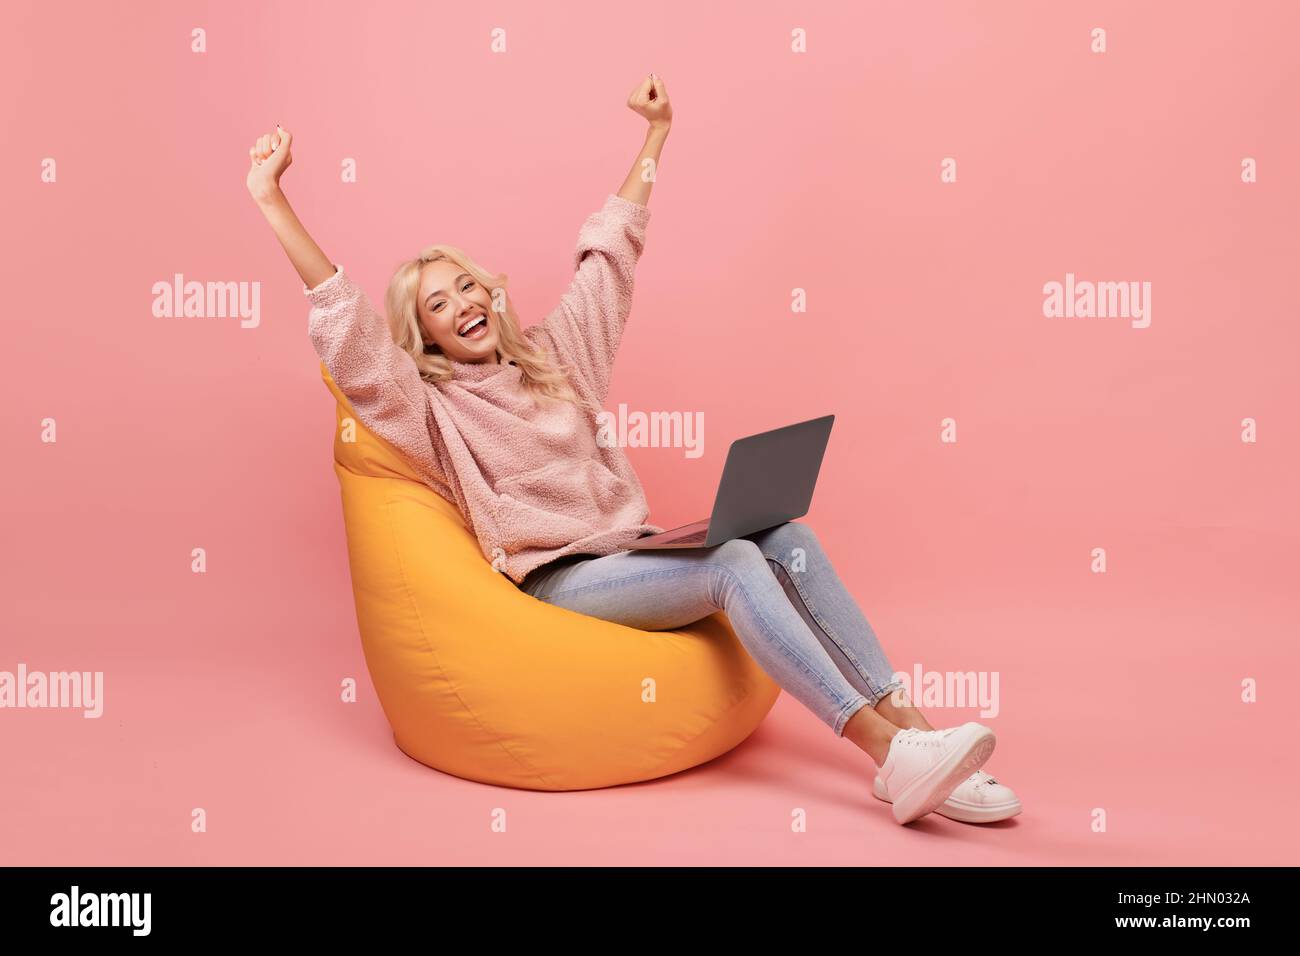 Donna allegra in casual seduta in poltrona beanbag con computer portatile e sollevare le mani, ha ottenuto il lavoro da sogno o grandi notizie Foto Stock